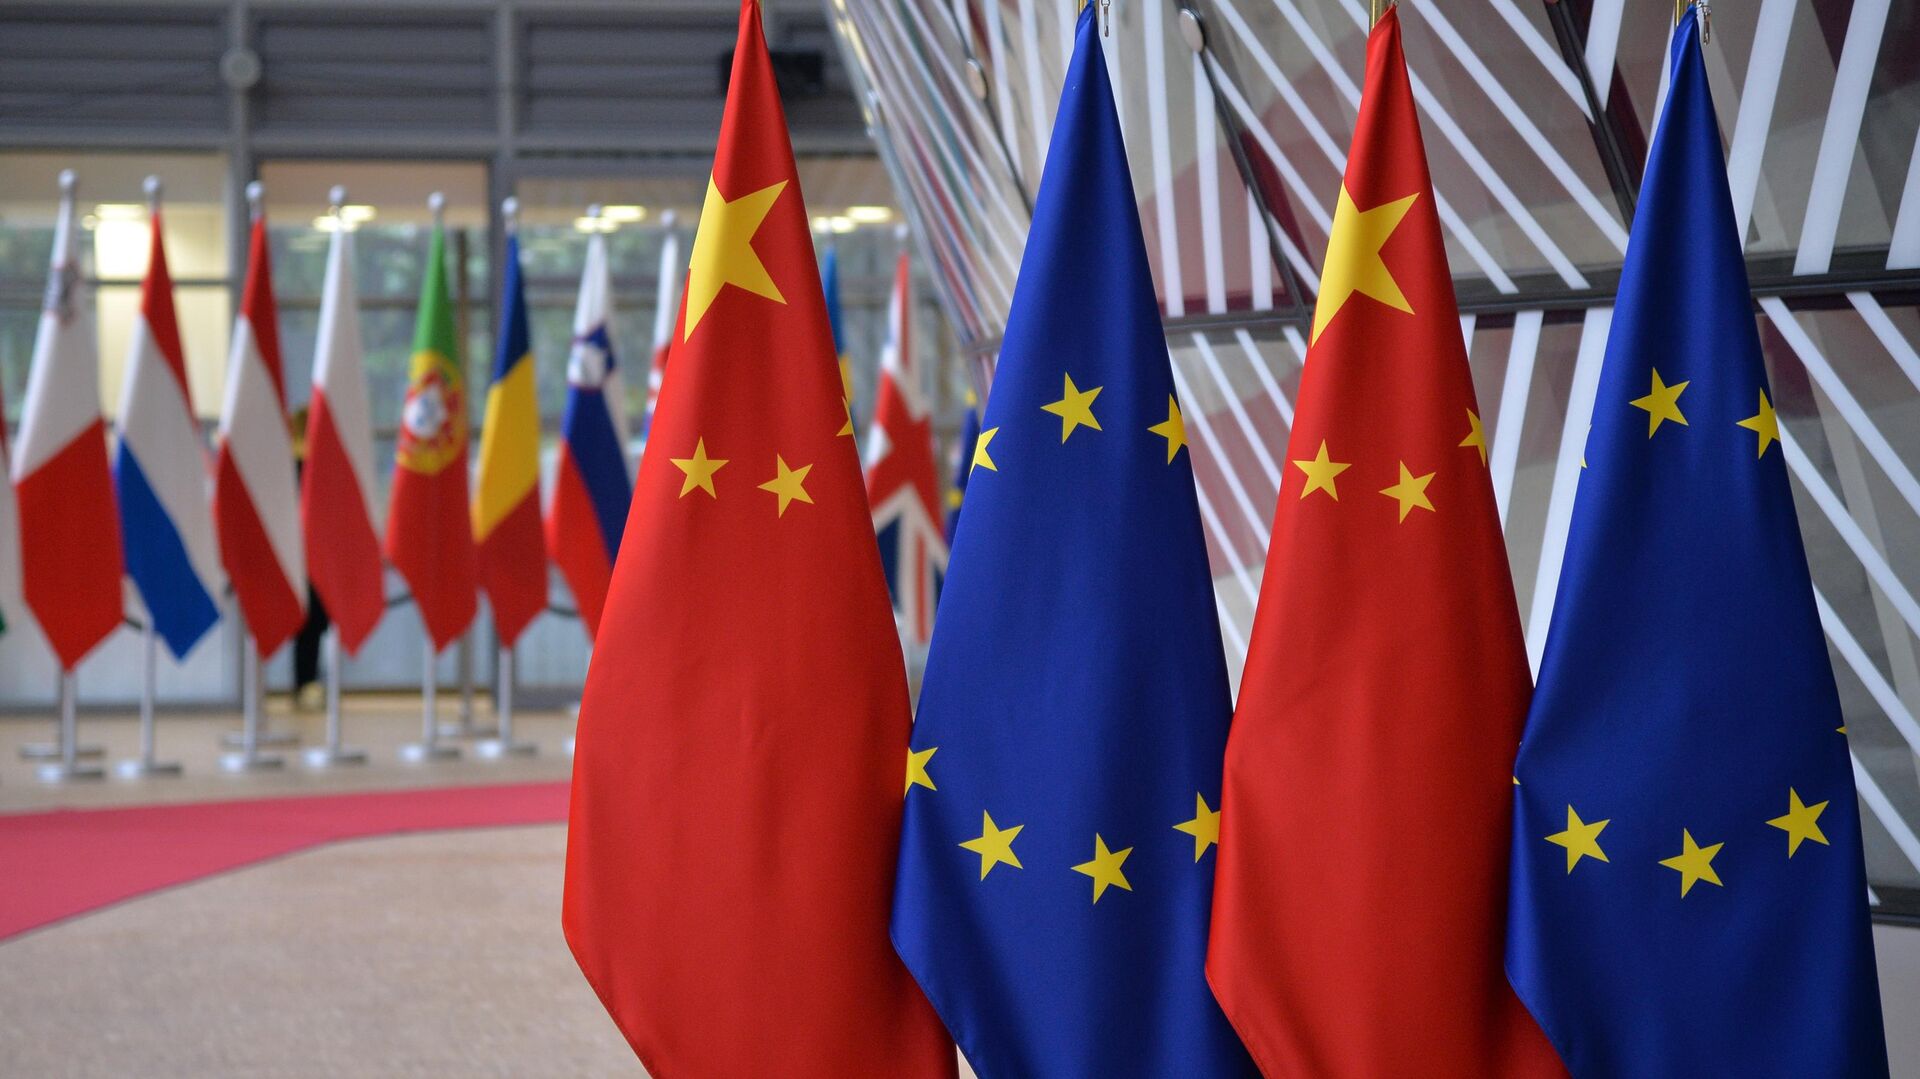 Флаги Европейского союза и государственные флаги КНР на саммите ЕС-КНР в Брюсселе. 9 апеля 2019 - РИА Новости, 1920, 31.03.2022